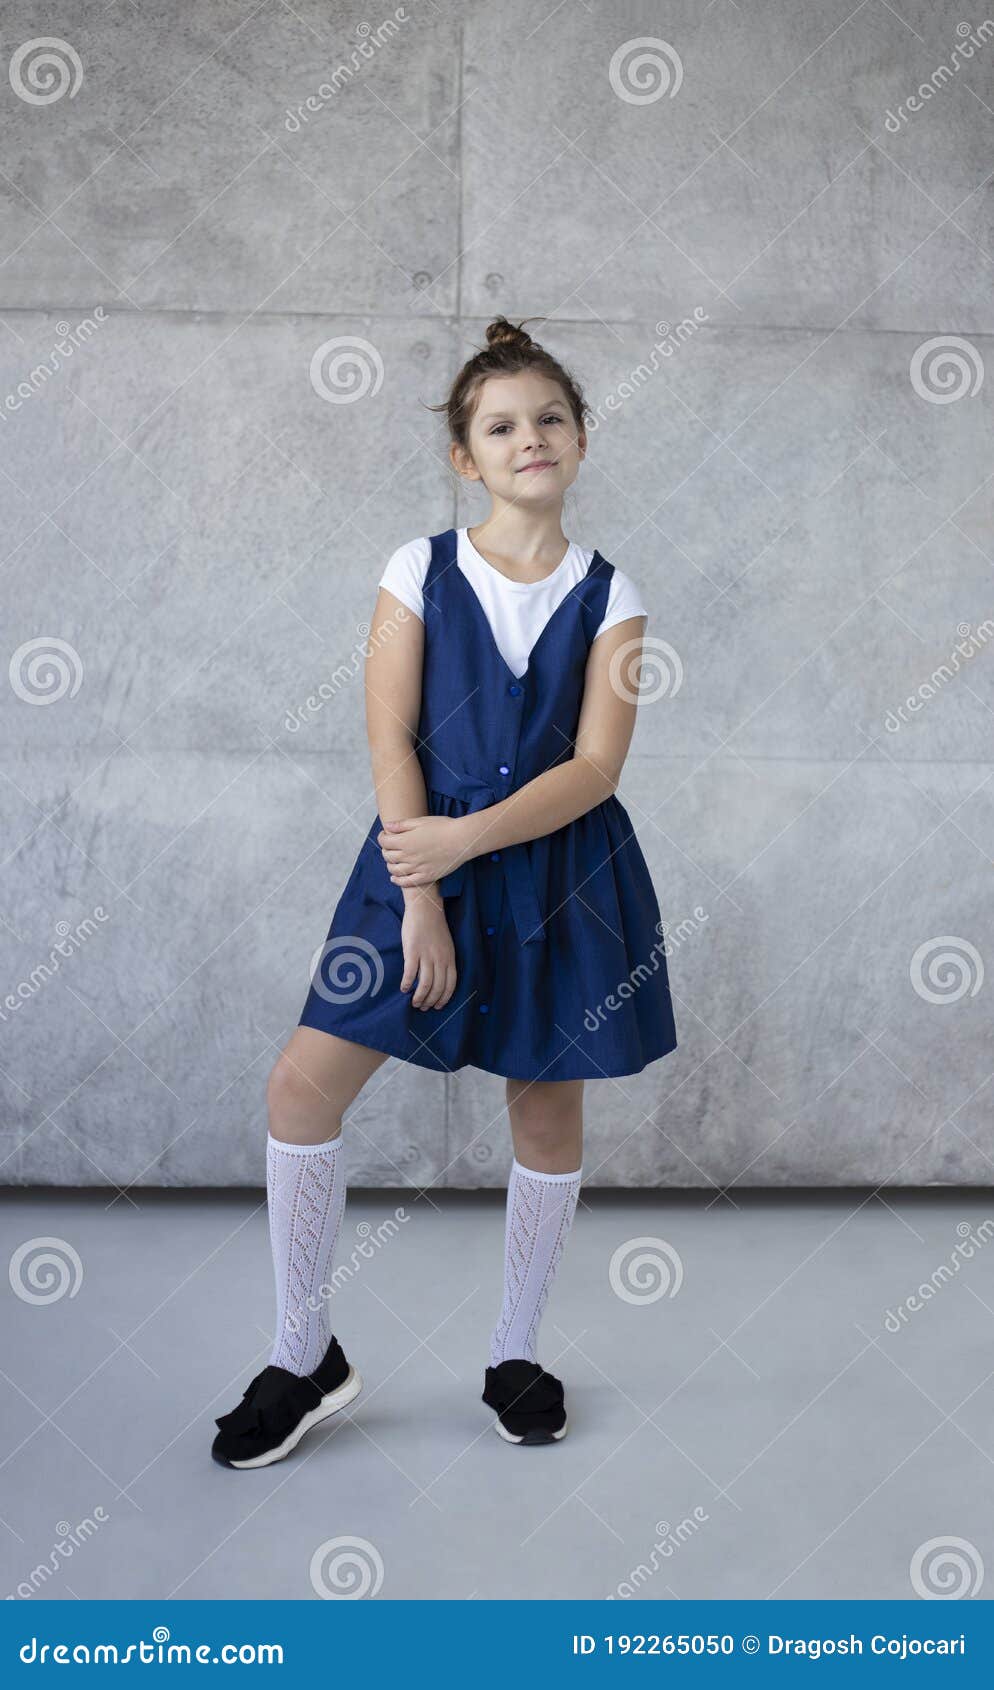 Joven Niña De Escuela De Diversión Con Camisa Blanca Y Uniforme Azul Sobre Fondo Hormigón Niños Retrato De Estudio Foto de archivo - Imagen de concreto, gente: